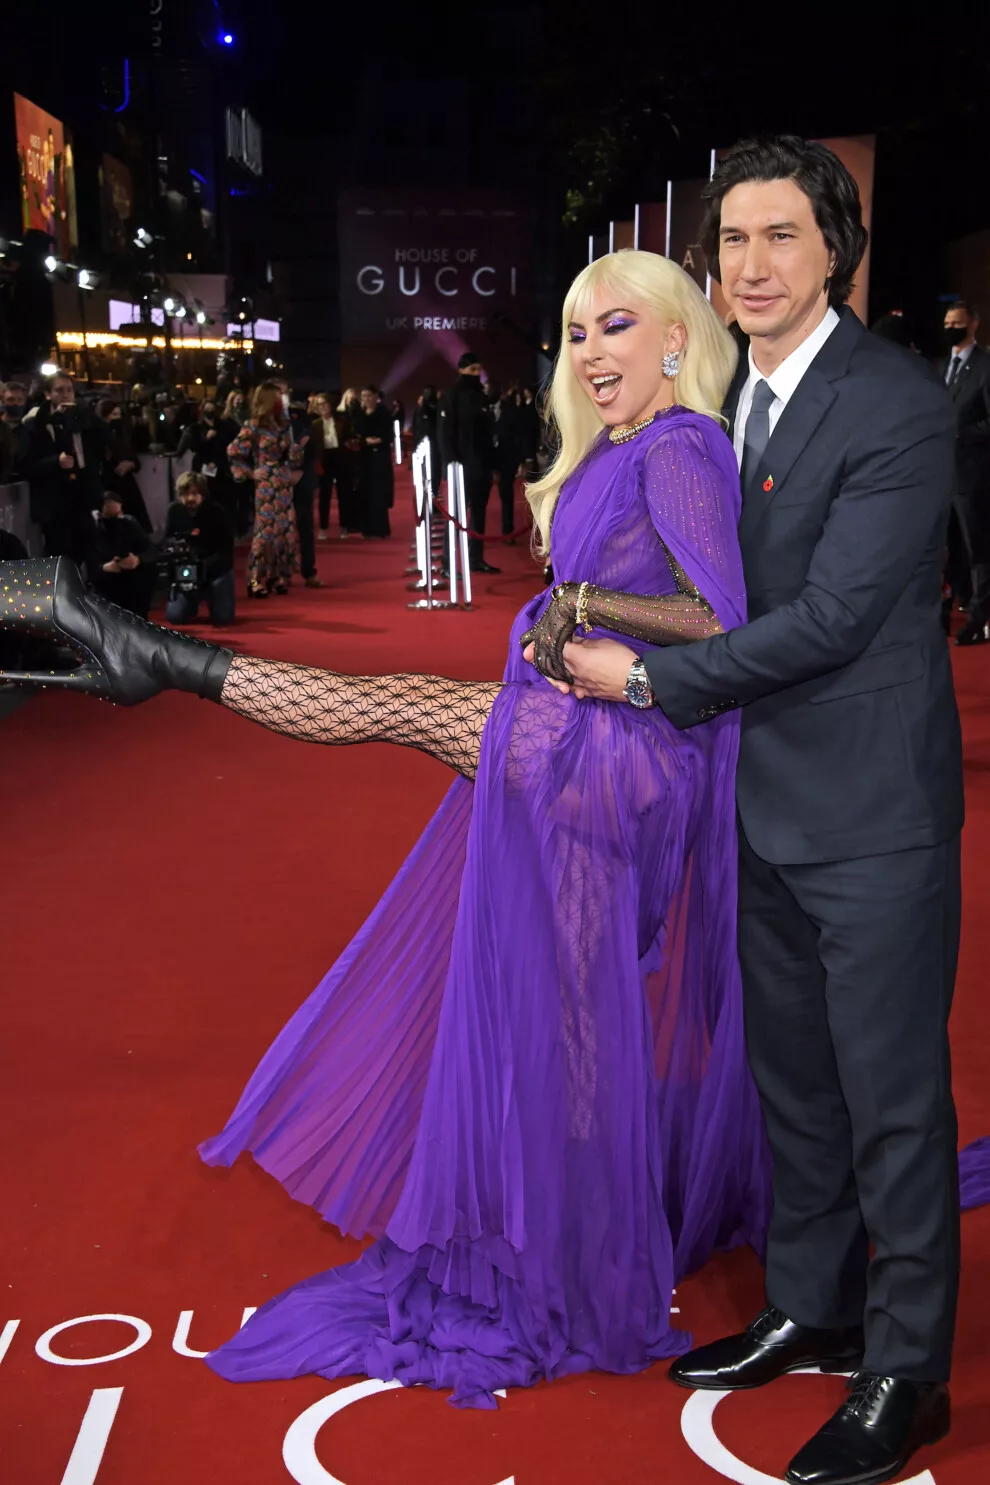 Адам Драйвер и Леди Гага на премьере "Дома Gucci" в Лондоне